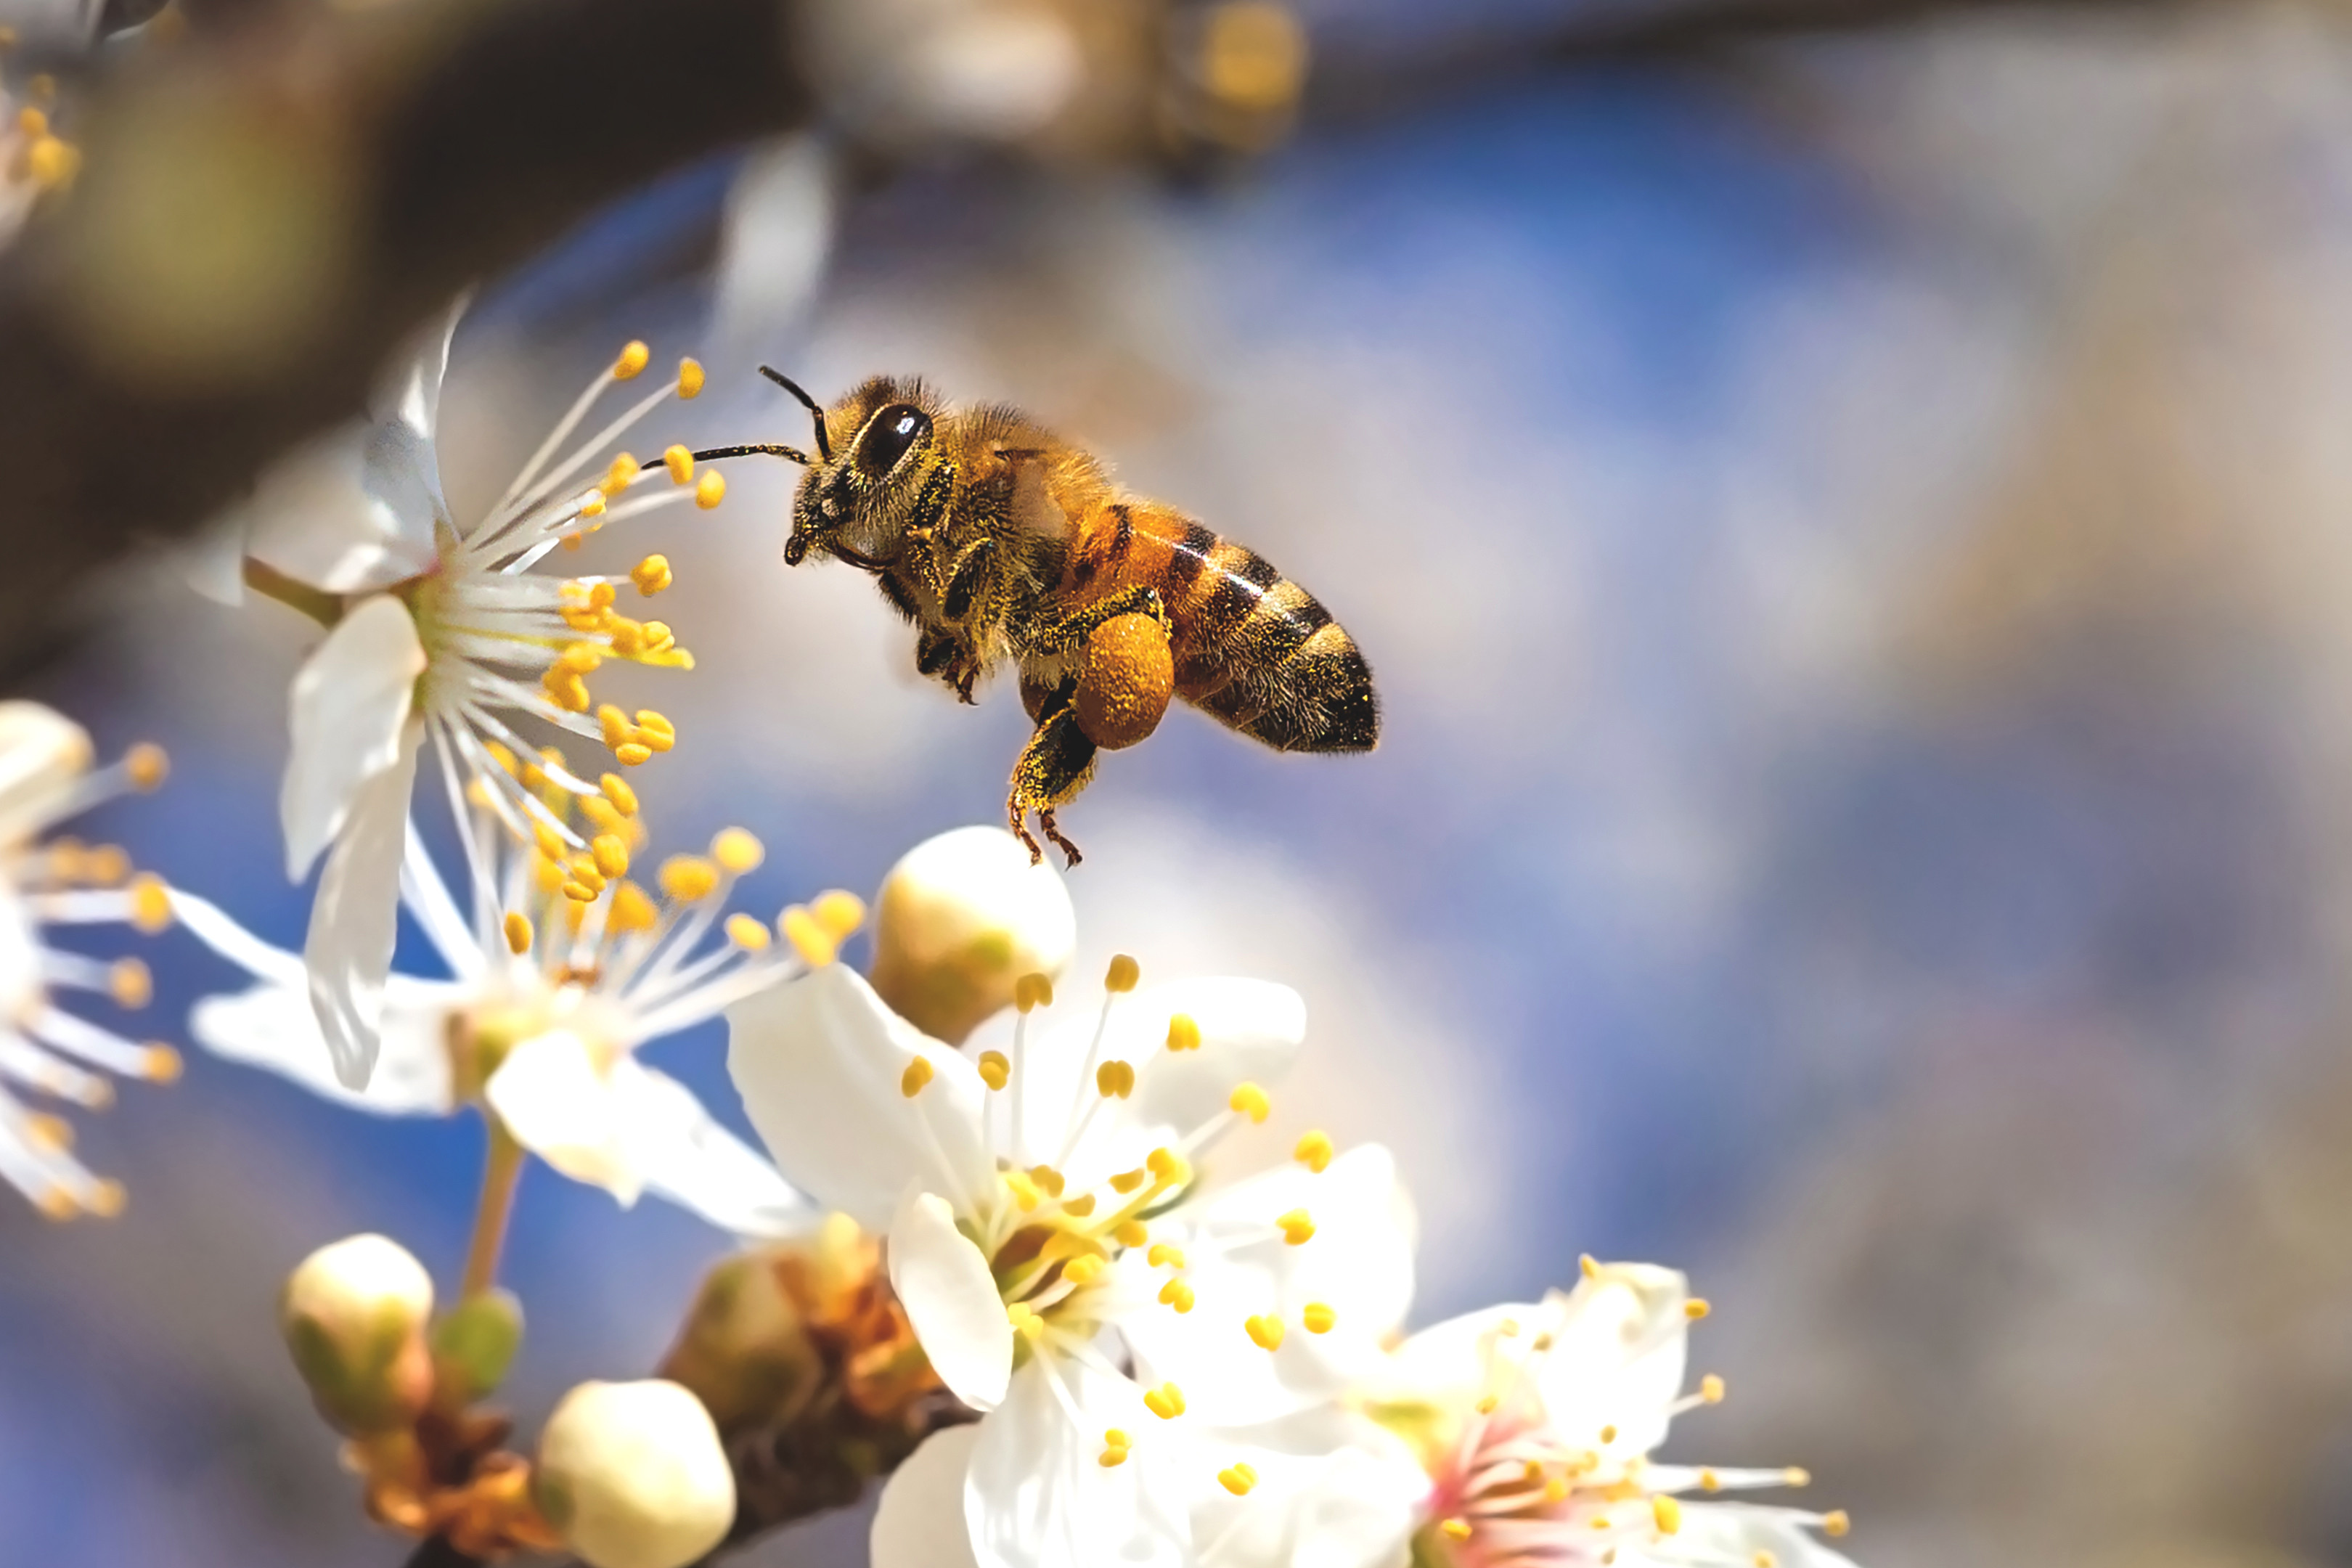 Chandelle Cylindre alvéolé - Merveilles d'abeilles